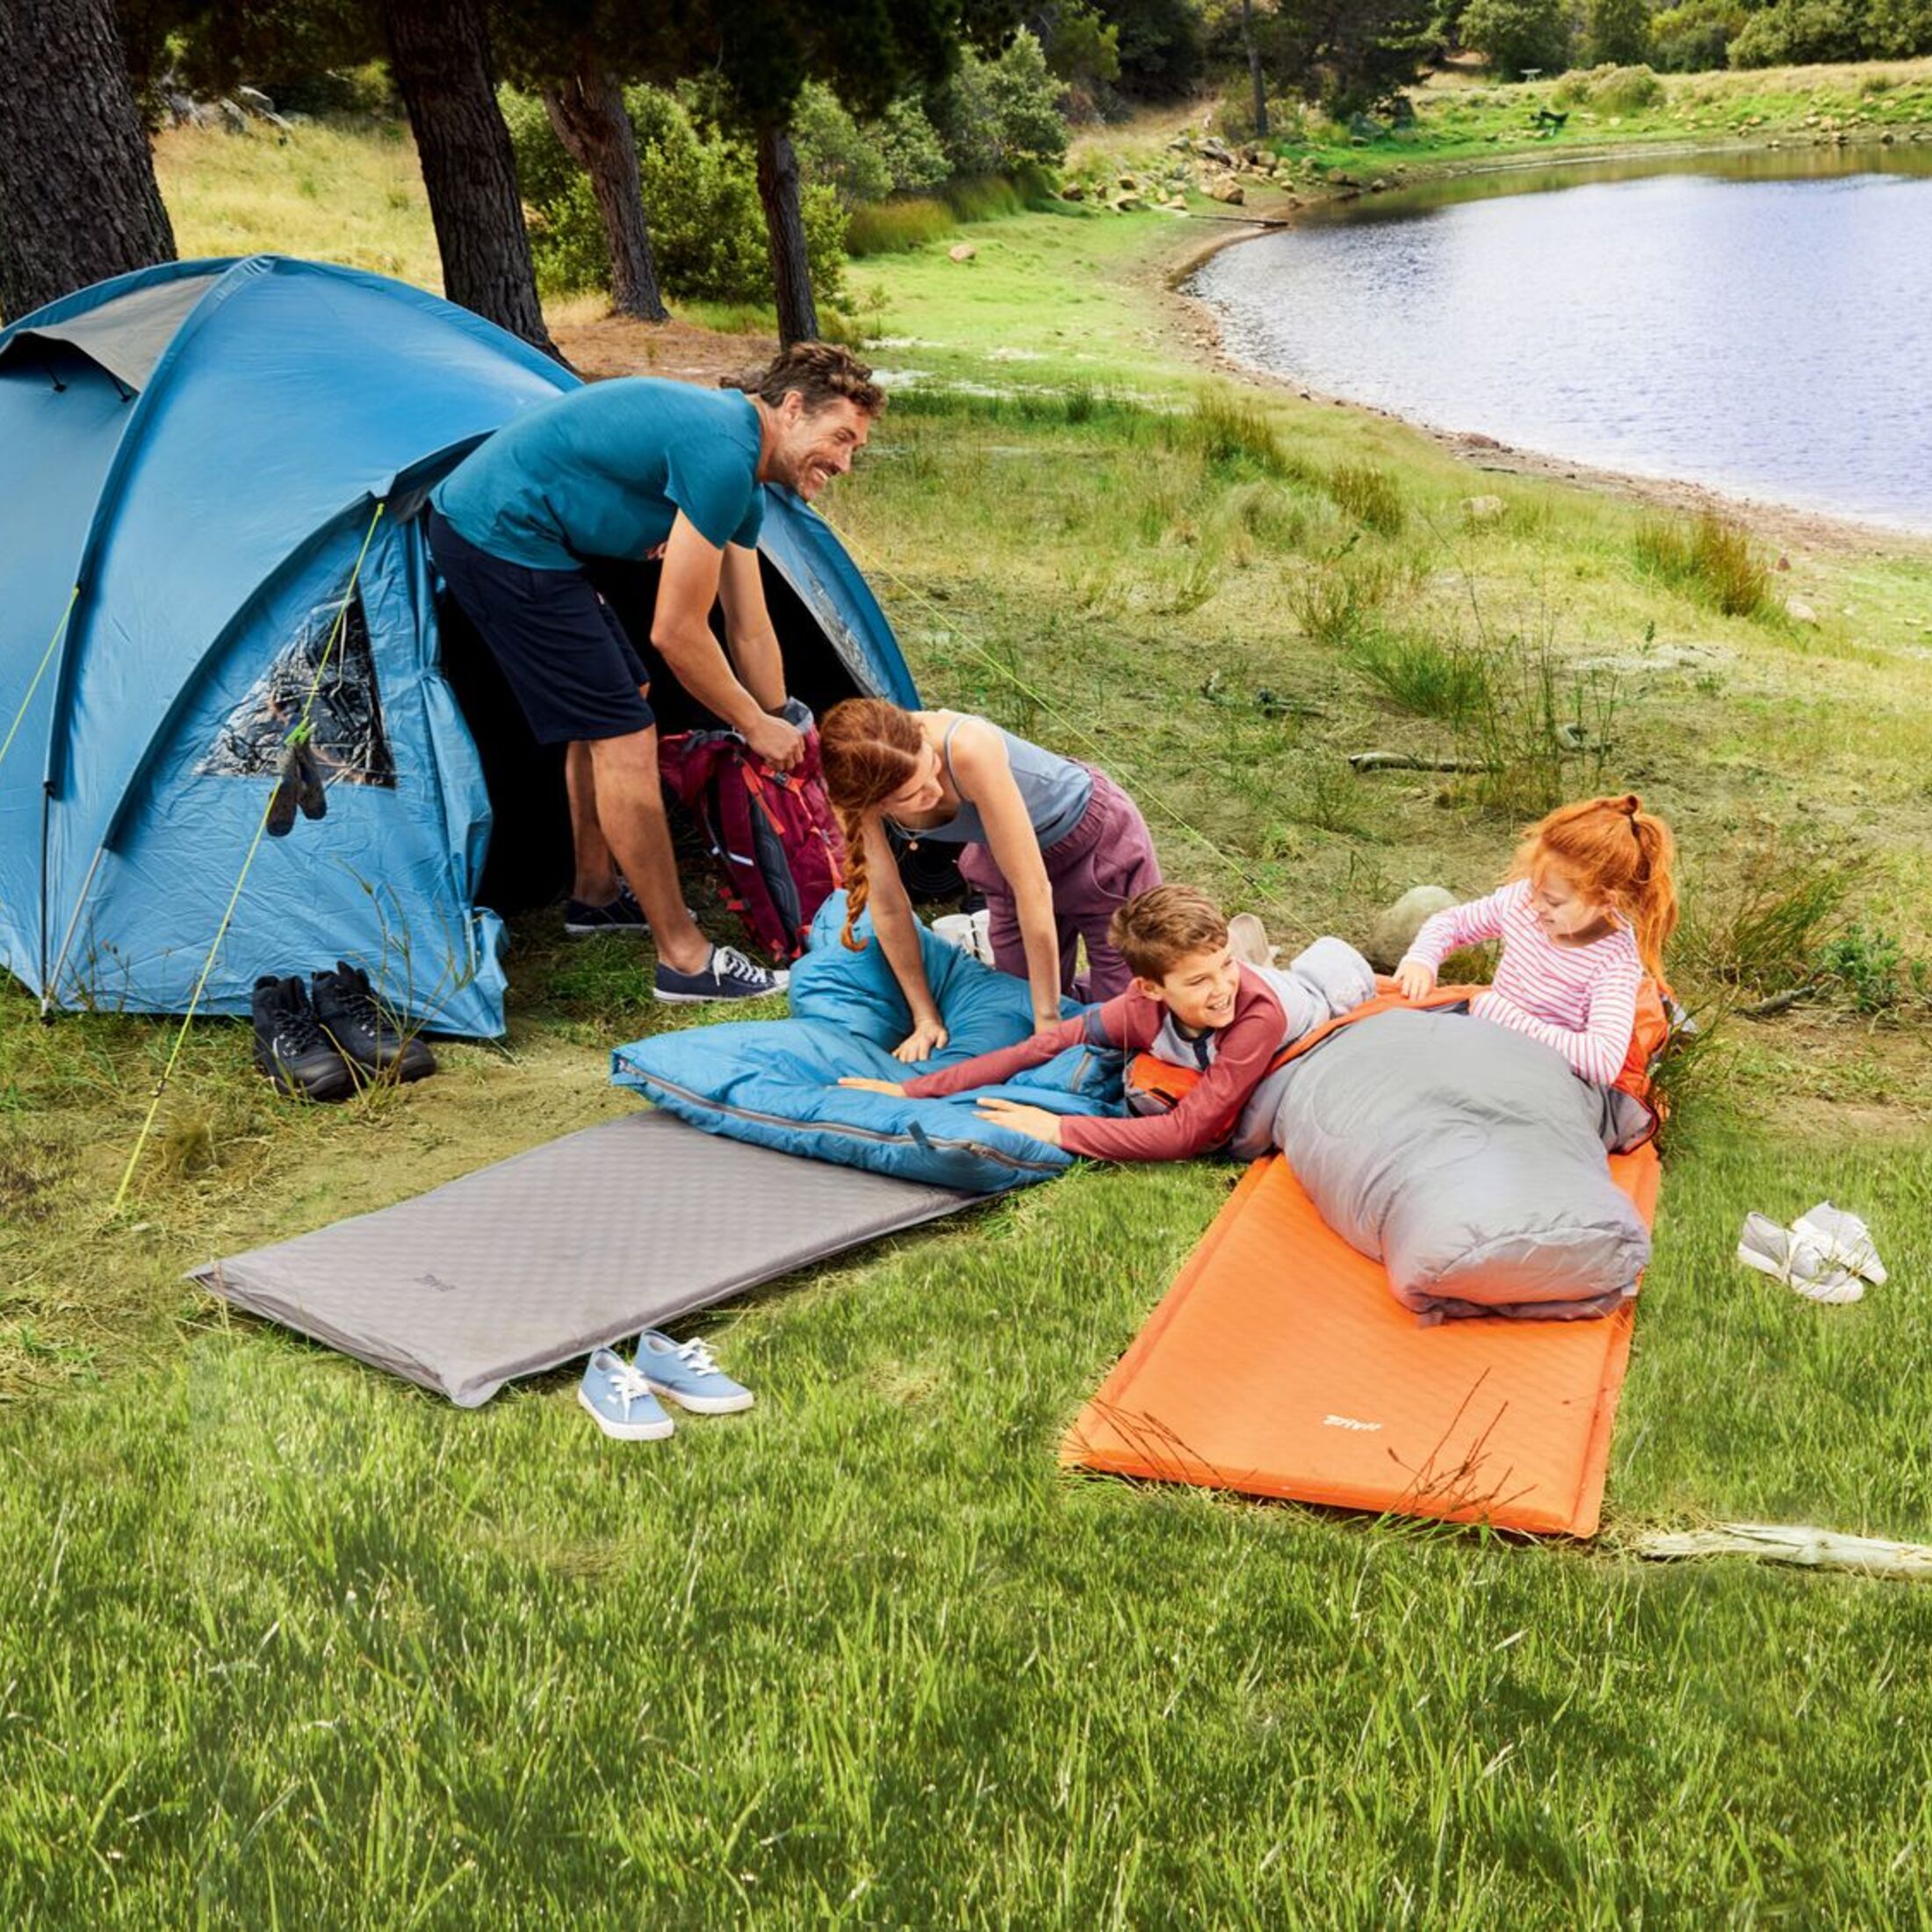 Billigzelte im Test: Was kann Discounter-Camping-Ausrüstung